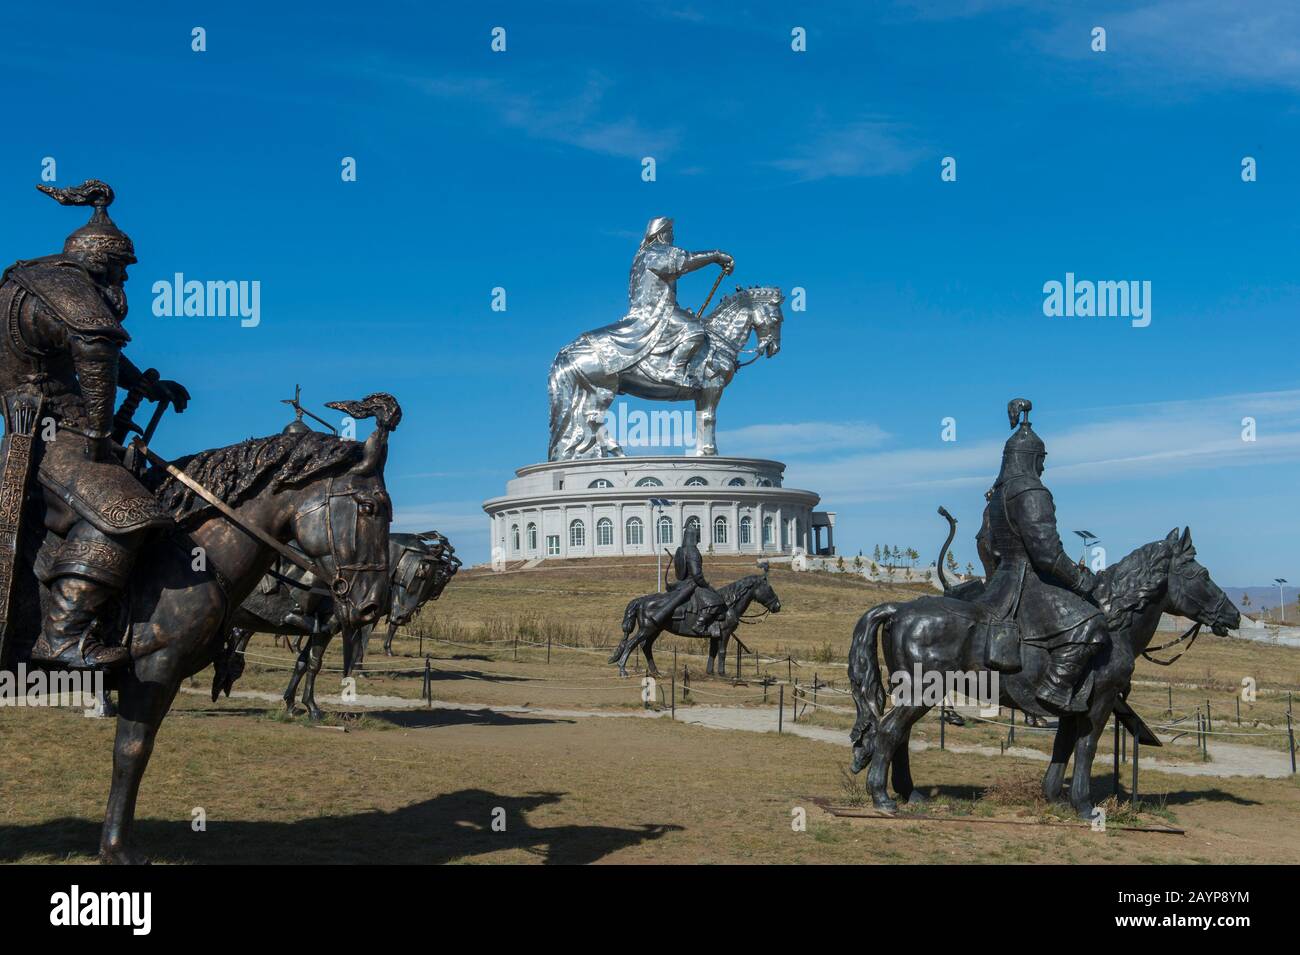 Владение великого хана. Статуя Чингисхана в Монголии. Памятник Чингисхану в Монголии. Конная статуя Чингисхана. Памятник Чингисхану в Казахстане.